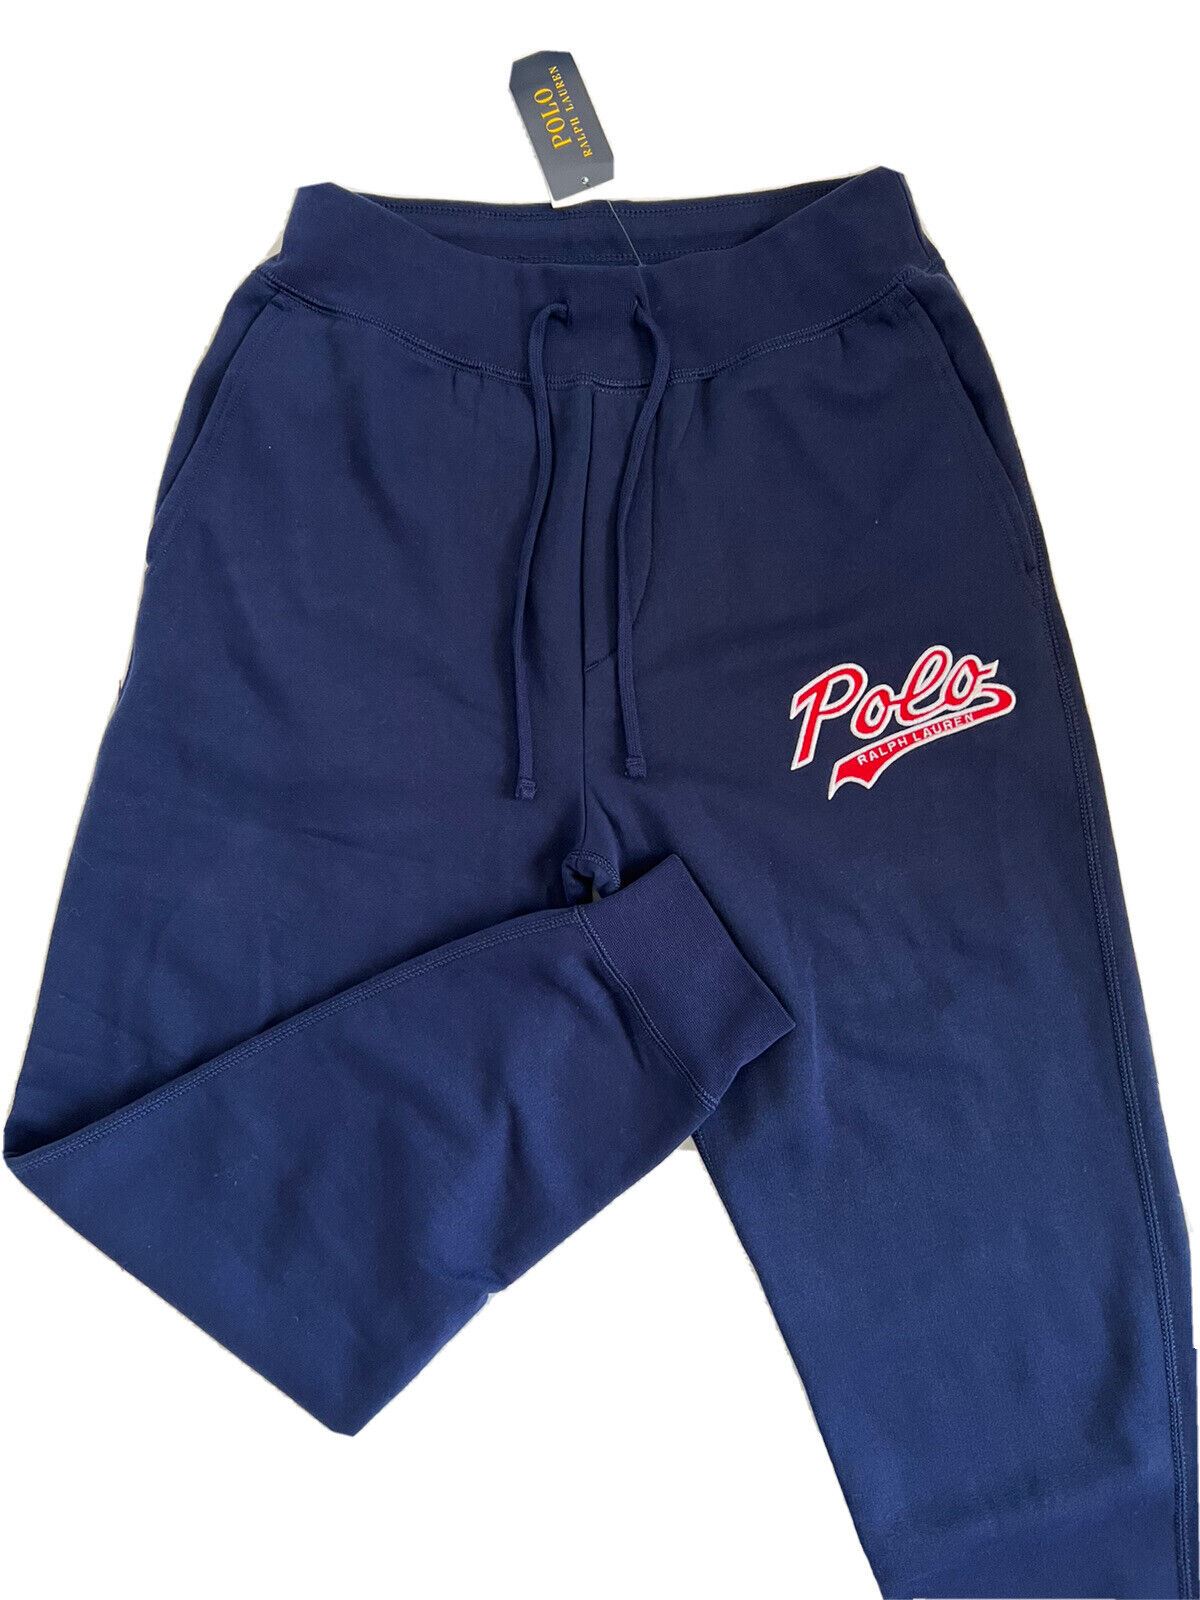 NWT $125 Polo Ralph Lauren Men's Polo Logo Navy Casual Pants Small